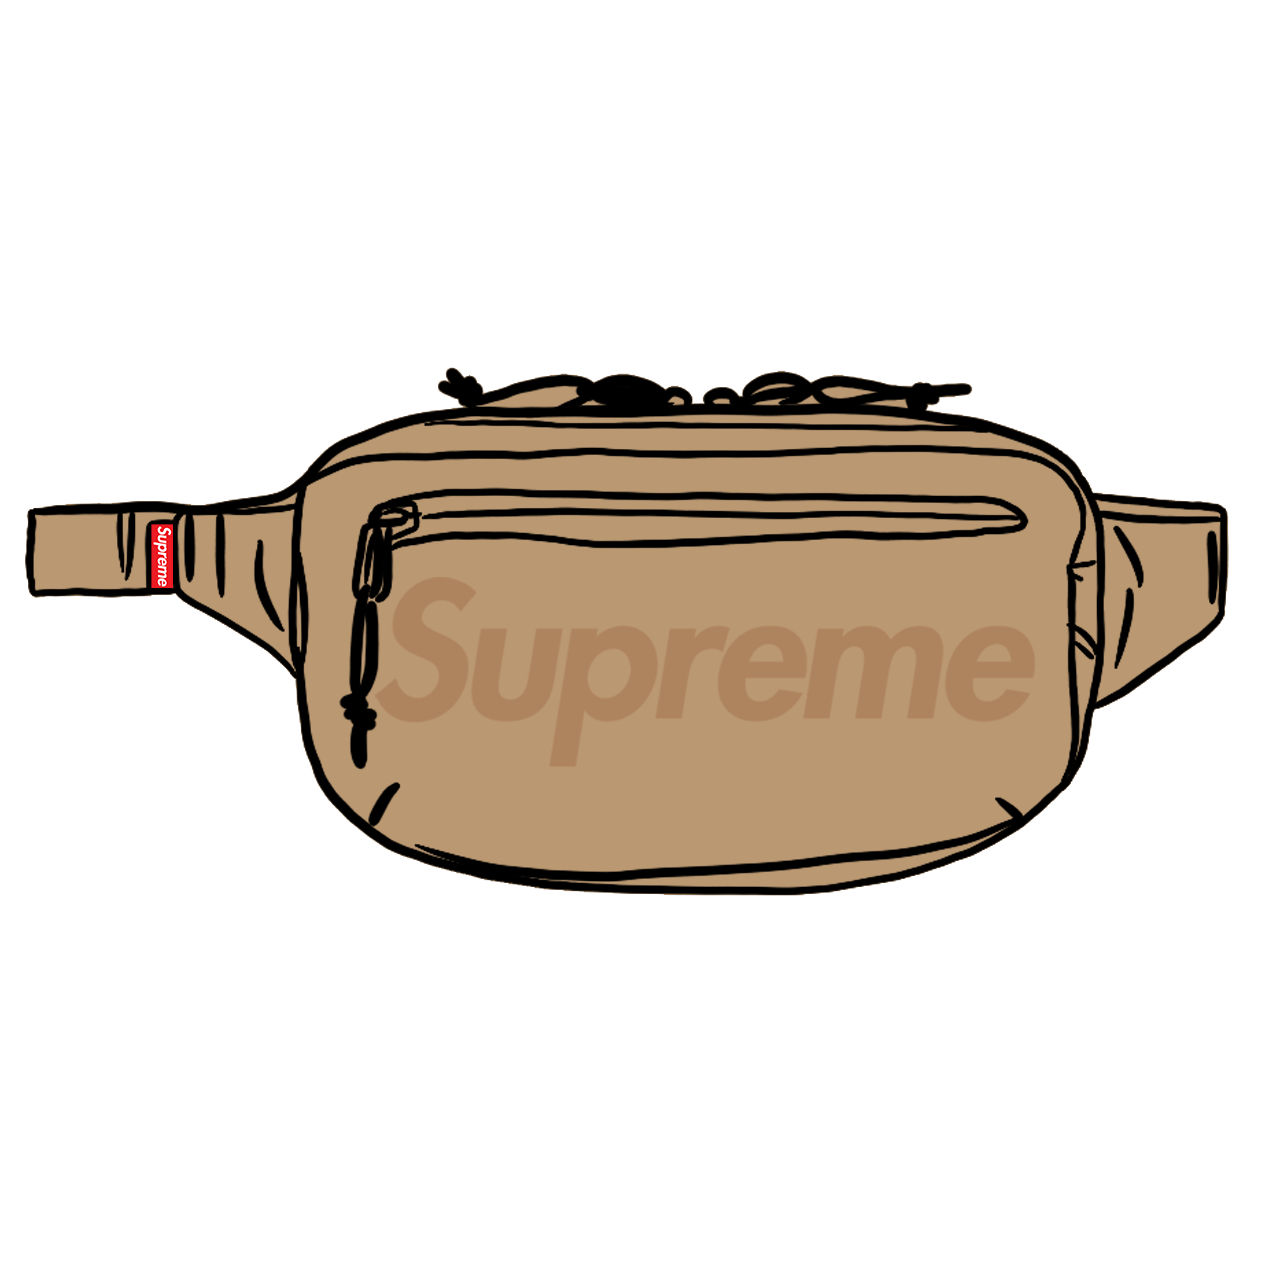 Supreme Waist Bag Tan